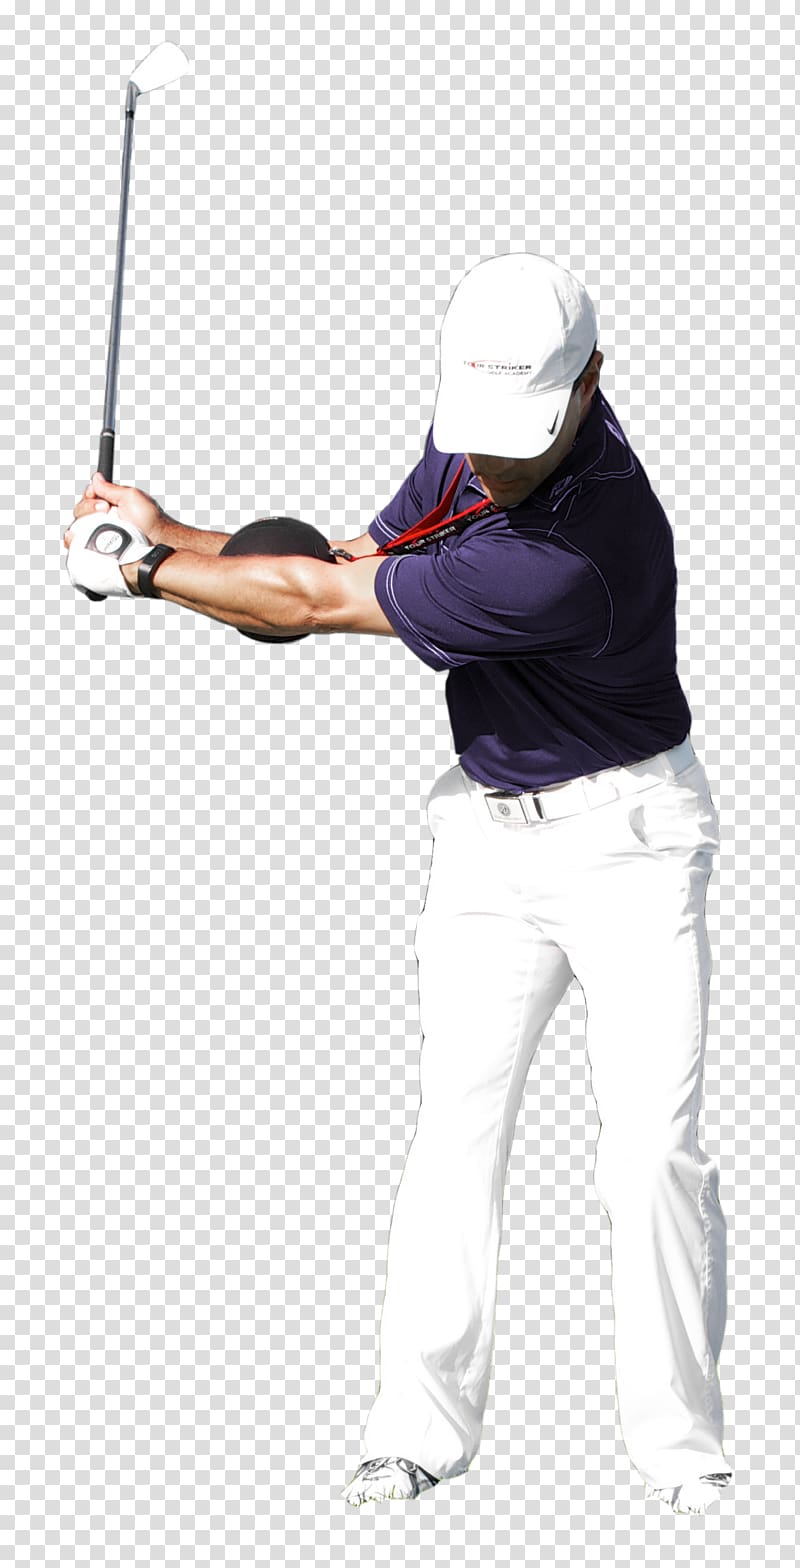 Golf equipment Golf Balls Golf Australia, Golf transparent background PNG clipart